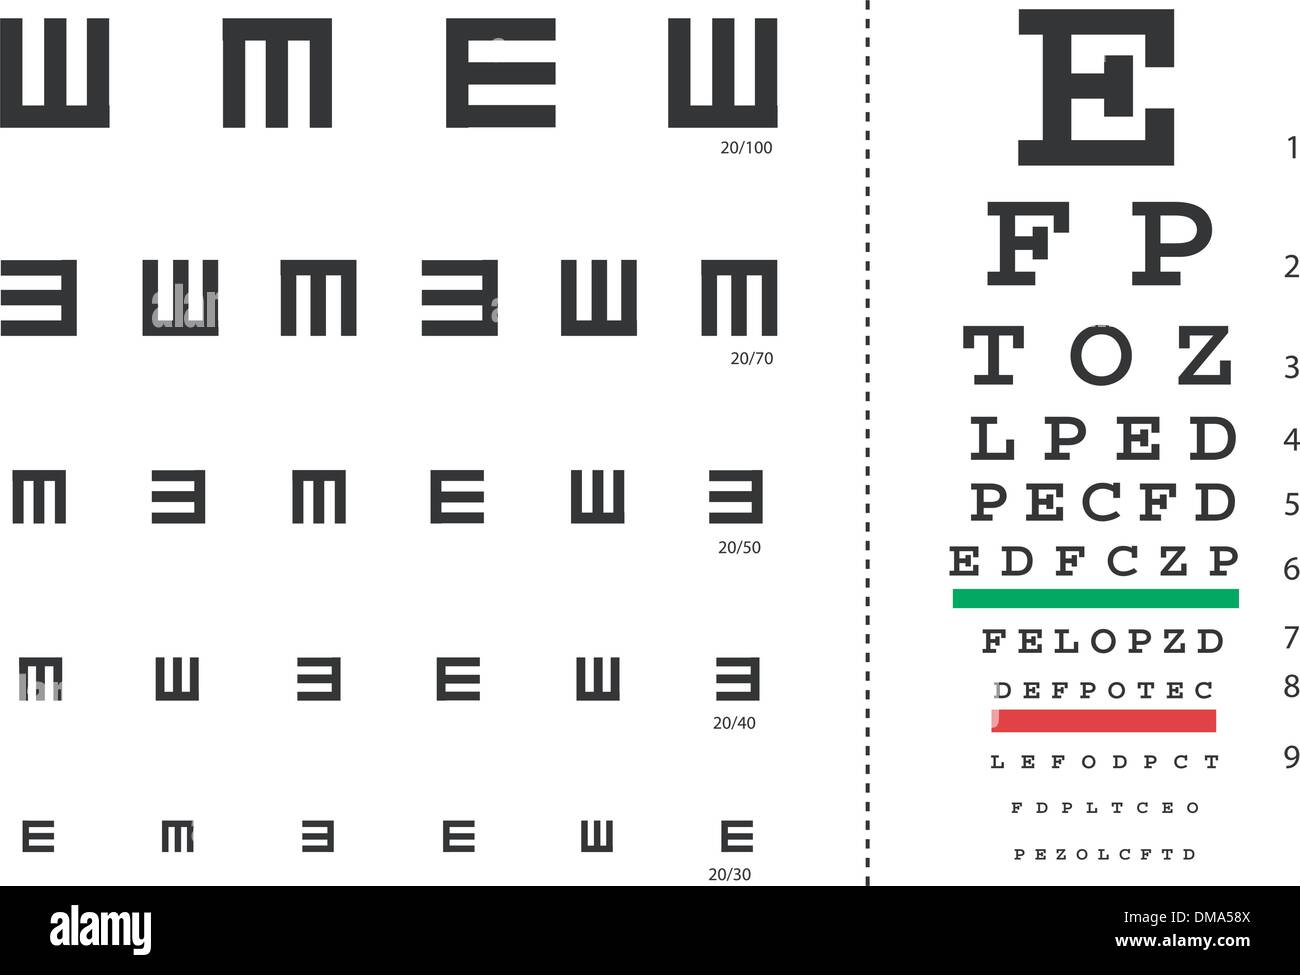 Eye test chart immagini e fotografie stock ad alta risoluzione - Alamy